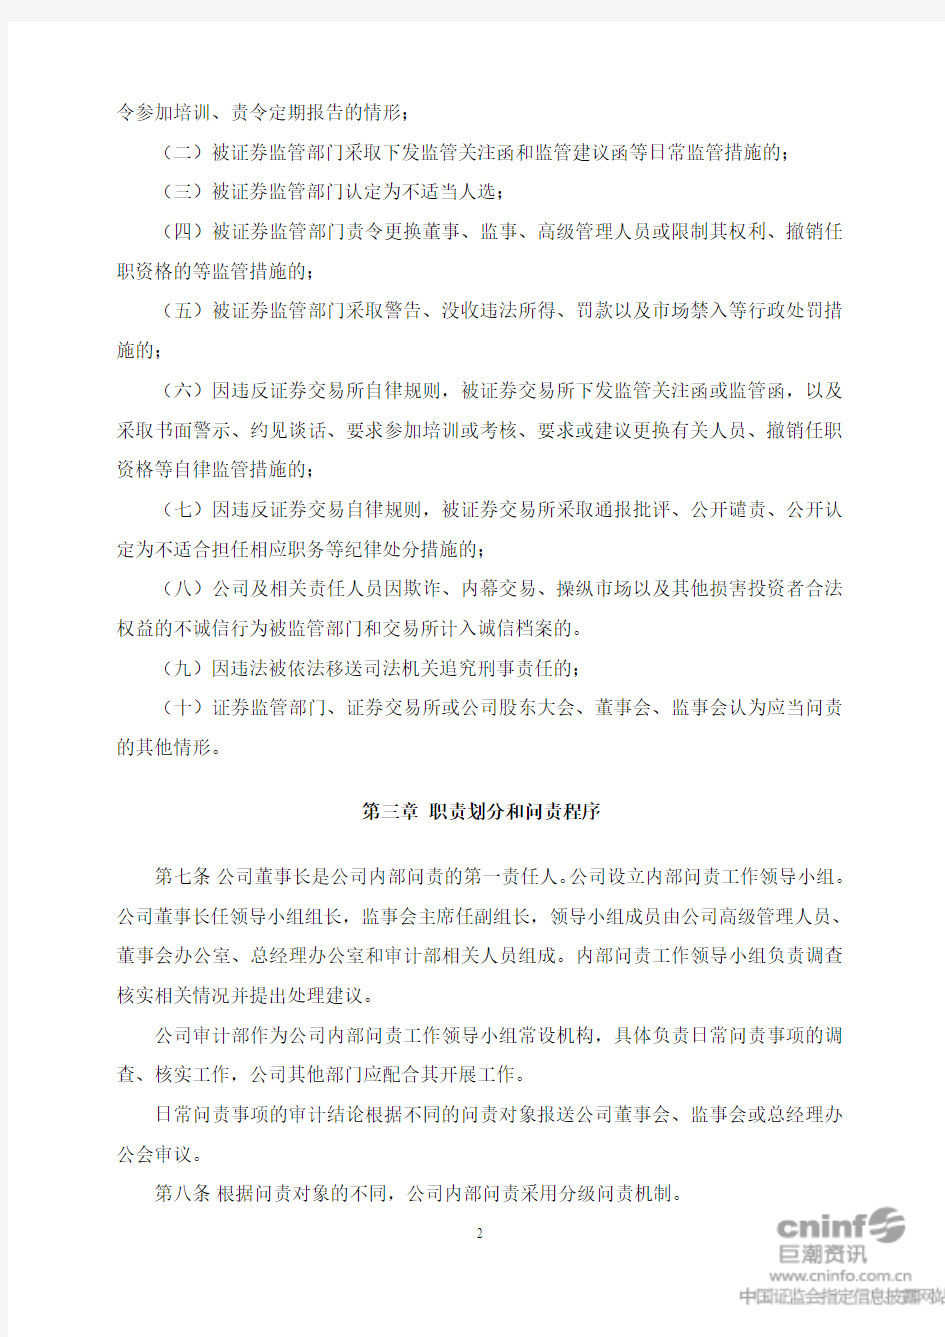 中国武夷实业股份有限公司内部问责制度